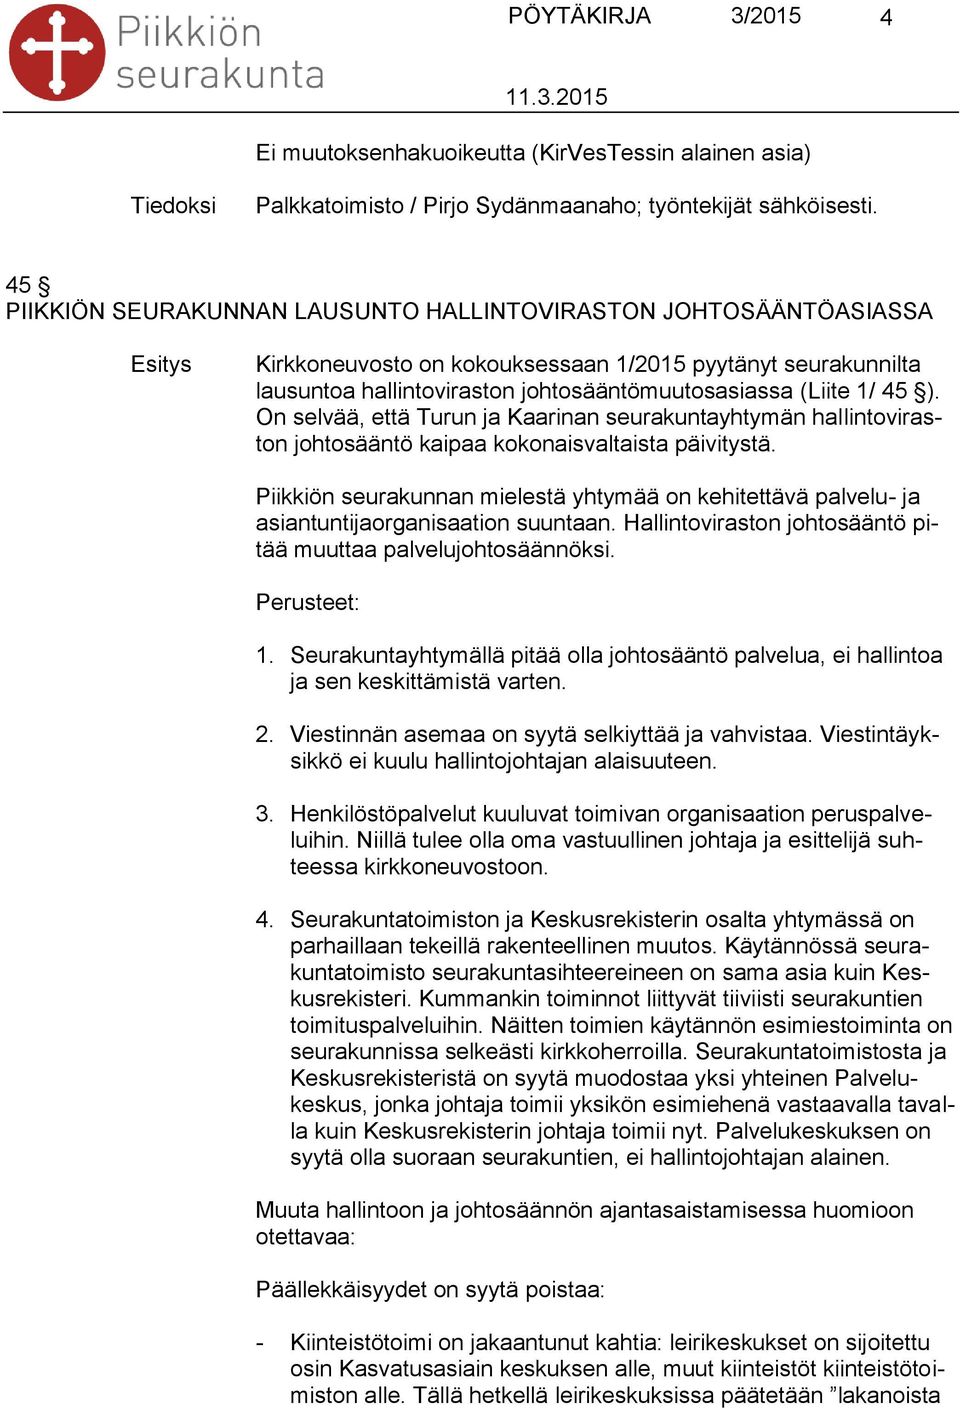 On selvää, että Turun ja Kaarinan seurakuntayhtymän hallintoviraston johtosääntö kaipaa kokonaisvaltaista päivitystä.